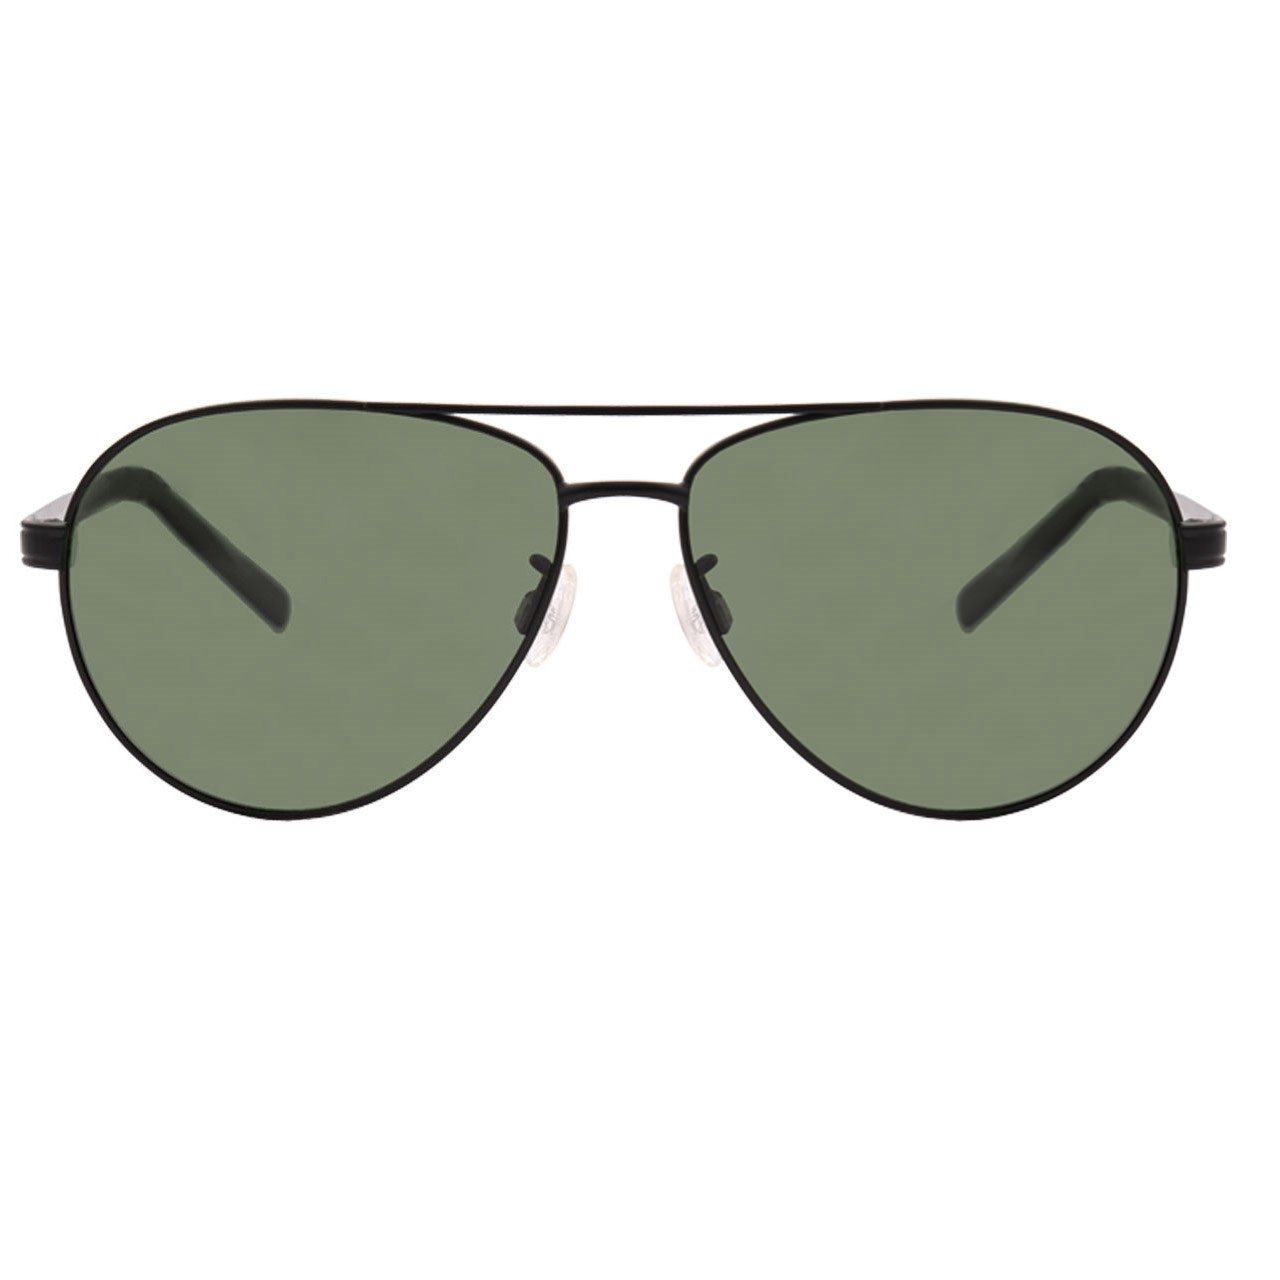 عینک آفتابی تیمبرلند مدل 9098-02R